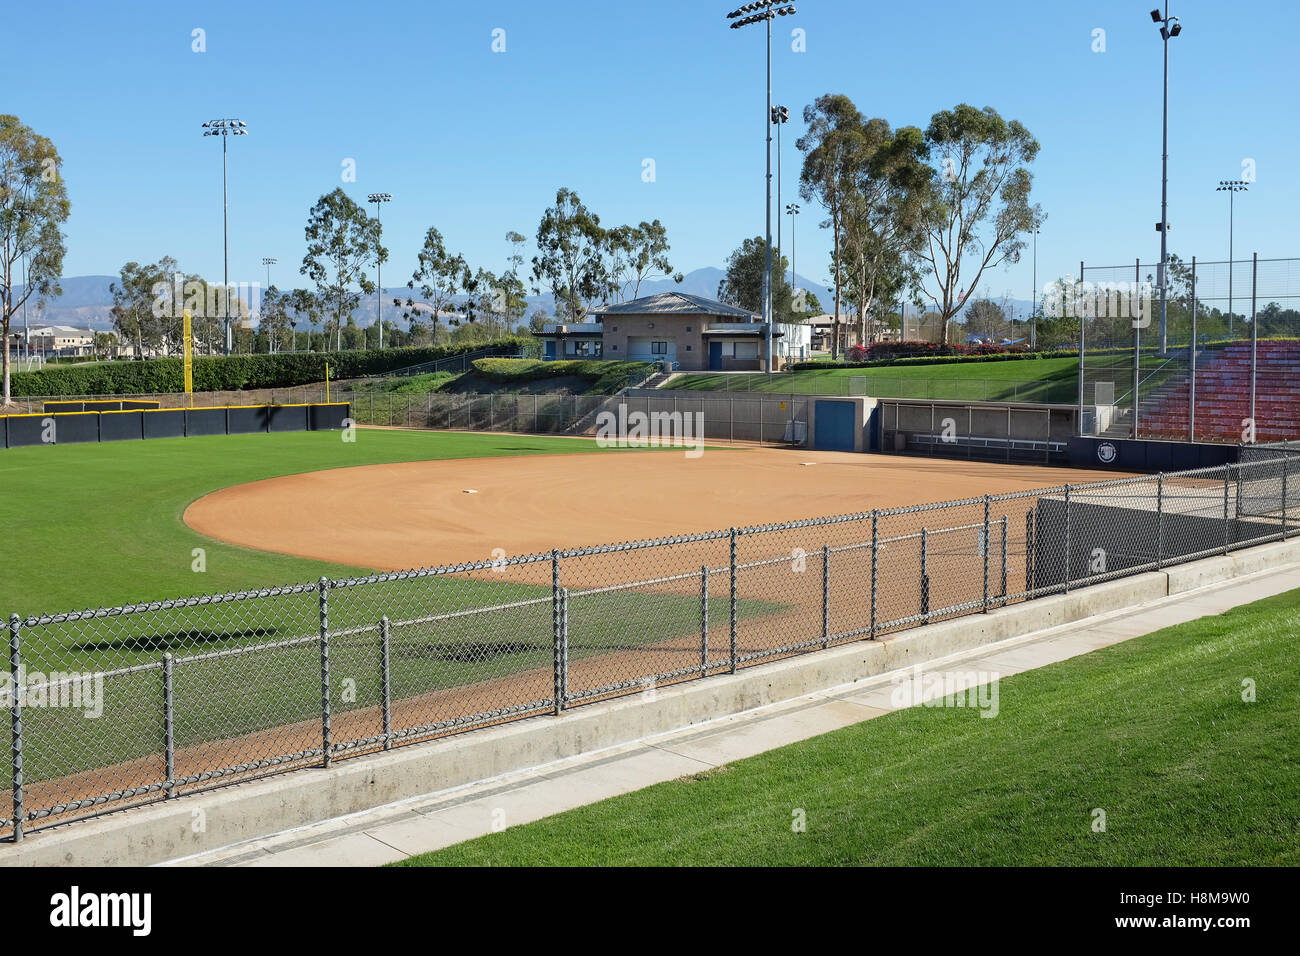 Deanna Manning Stadion in Irvine, Kalifornien. Das Stadion wird von High School und Freizeit Softball-Teams genutzt und beherbergt die Stockfoto